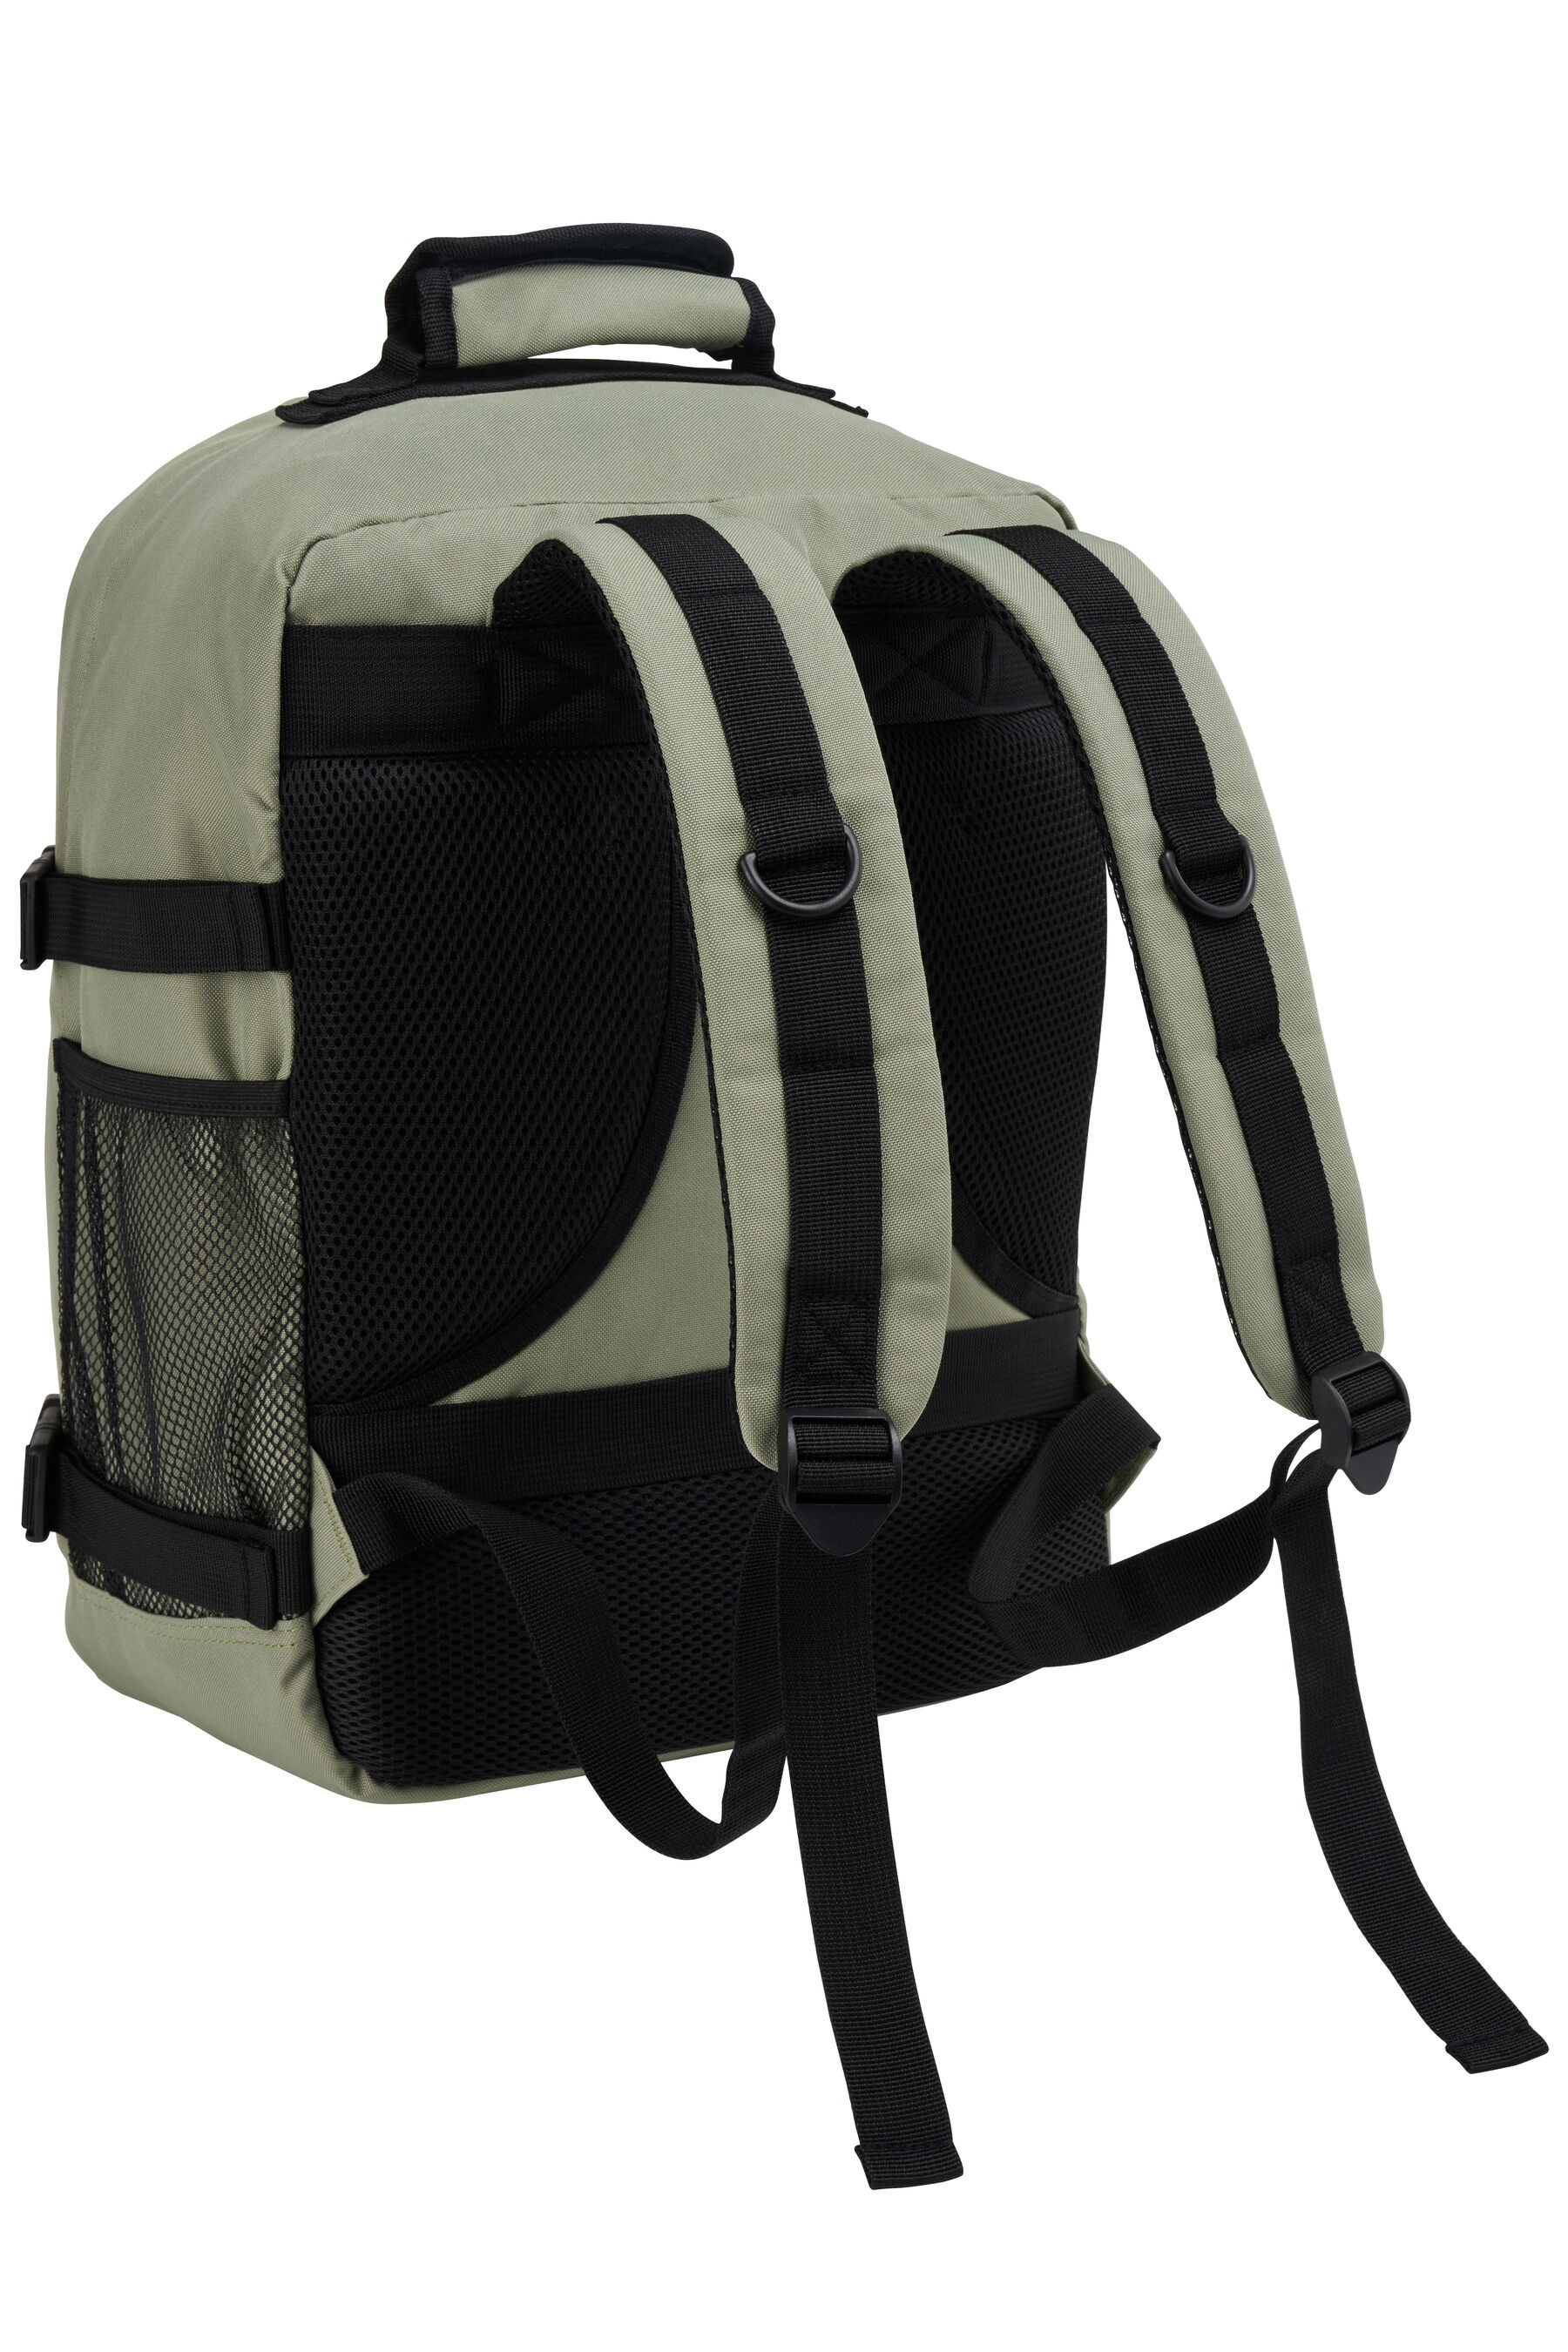 Metz 24L Backpack 40x30x20cm